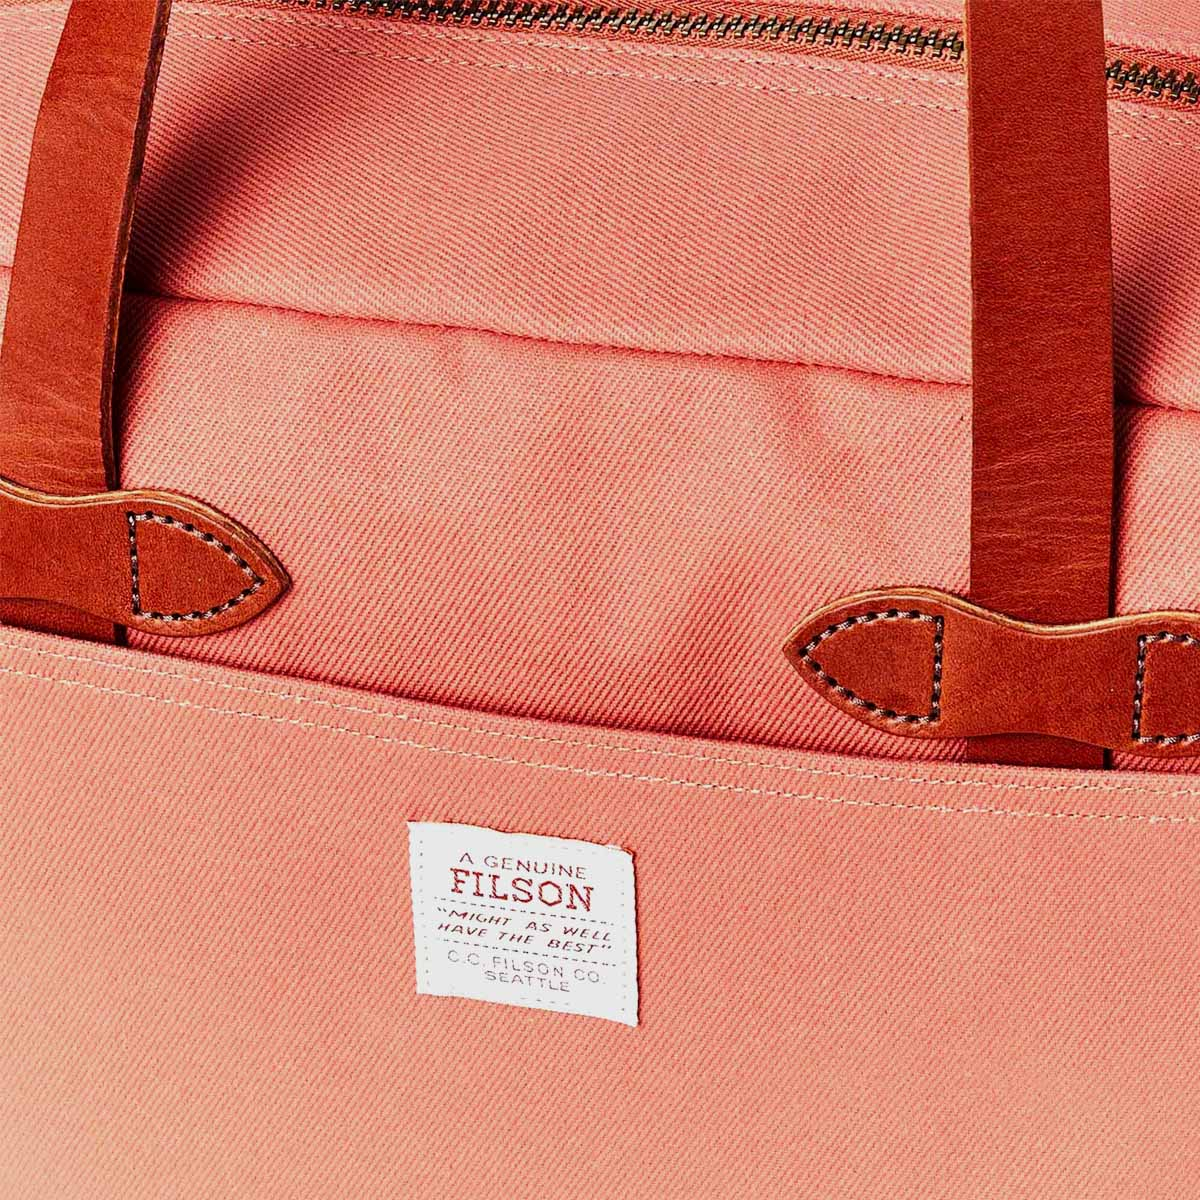 Filson Rugged Twill Tote Bag With Zipper Cedar Red, gemaakt voor mannen en vrouwen die van gemak, stijl en kwaliteit houden